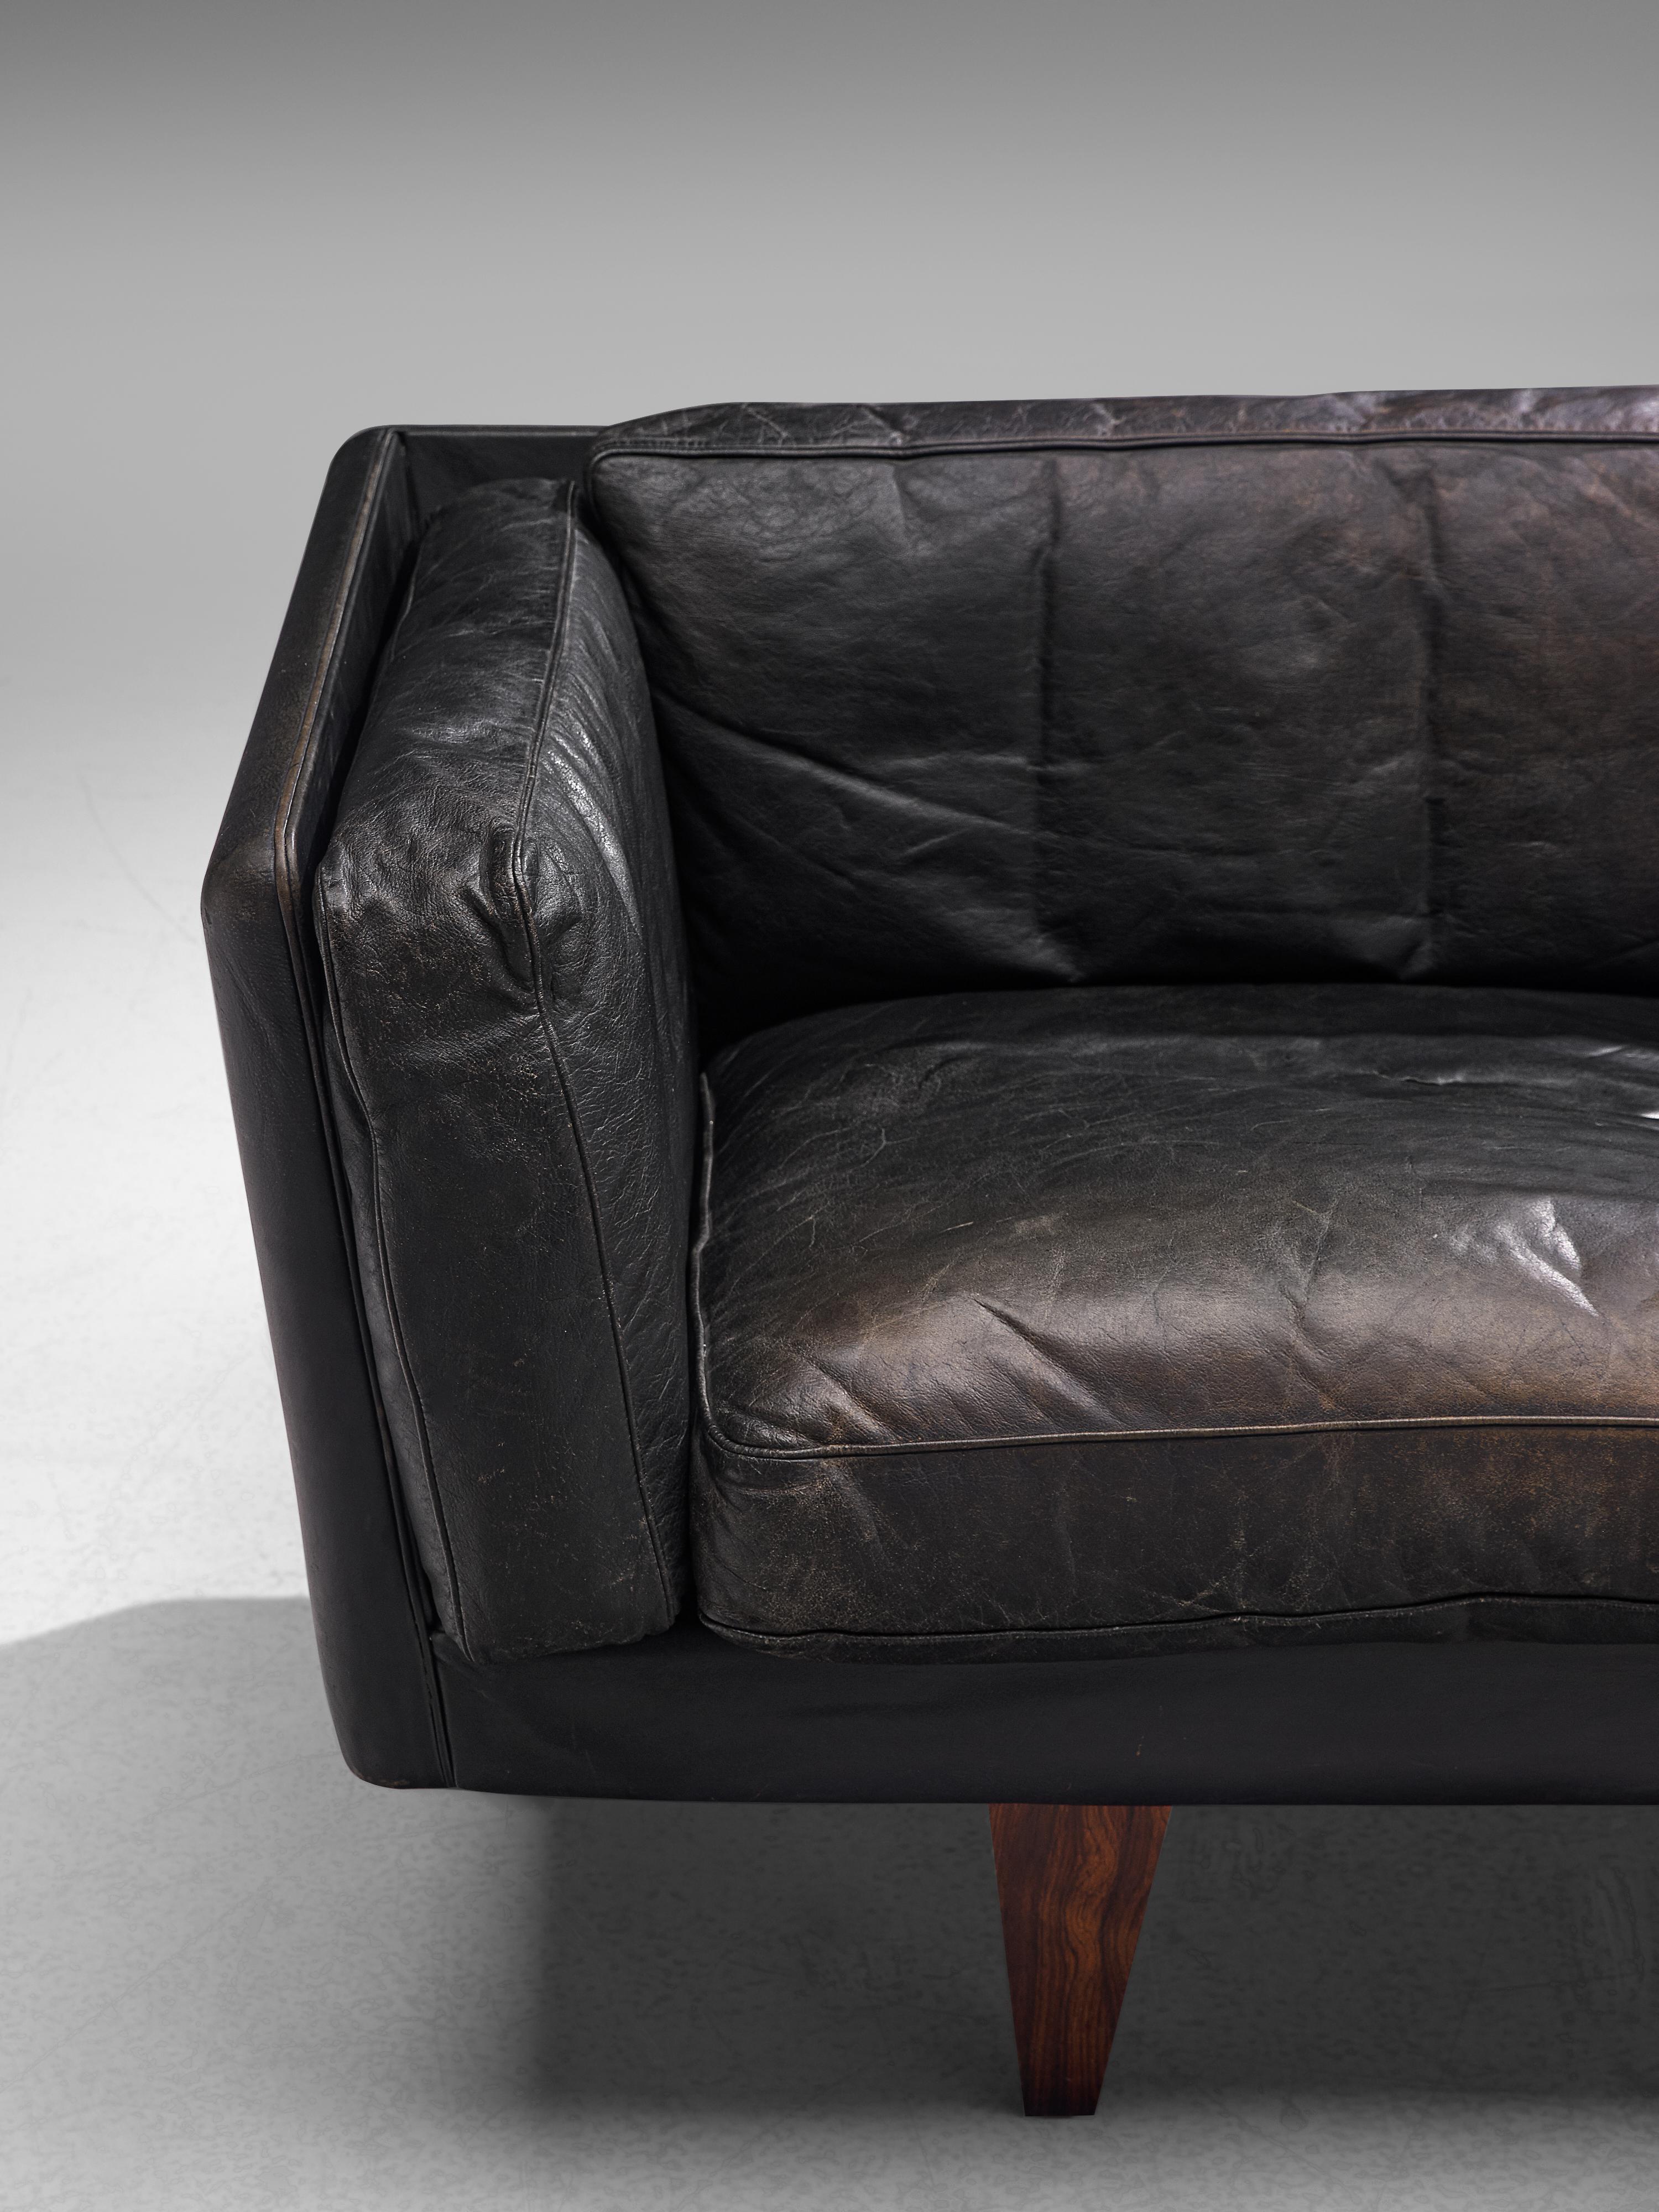 Illum Wikkelsø for Holger Christiansen Three-Seat Sofa 'V11' in Black Leather 3